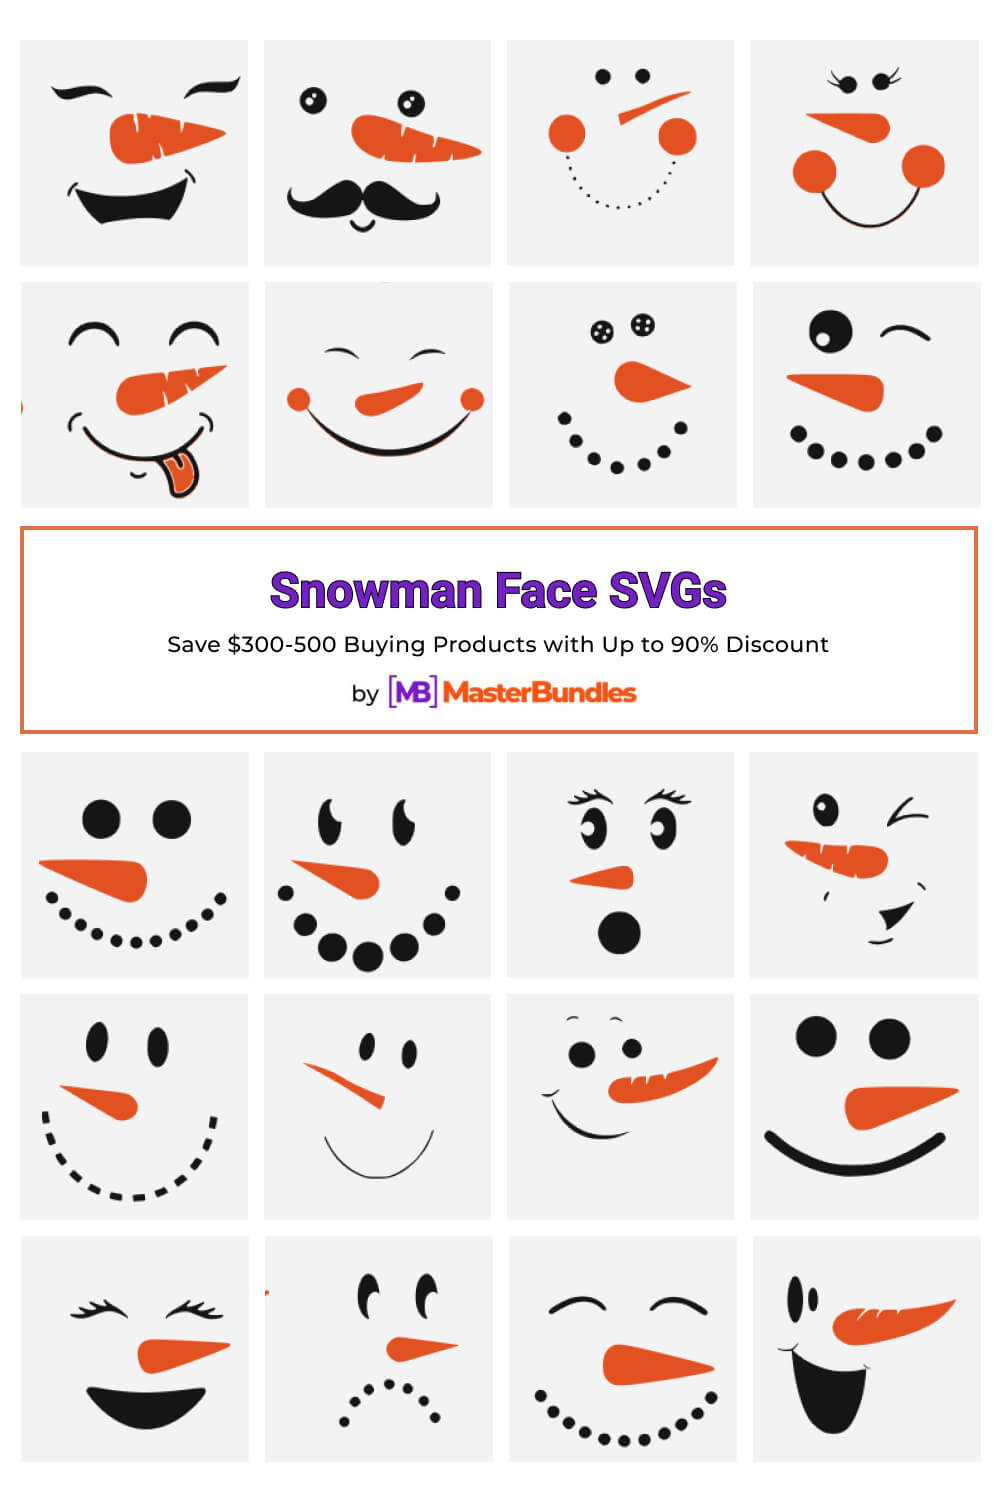 snowman face svgs pinterest image.